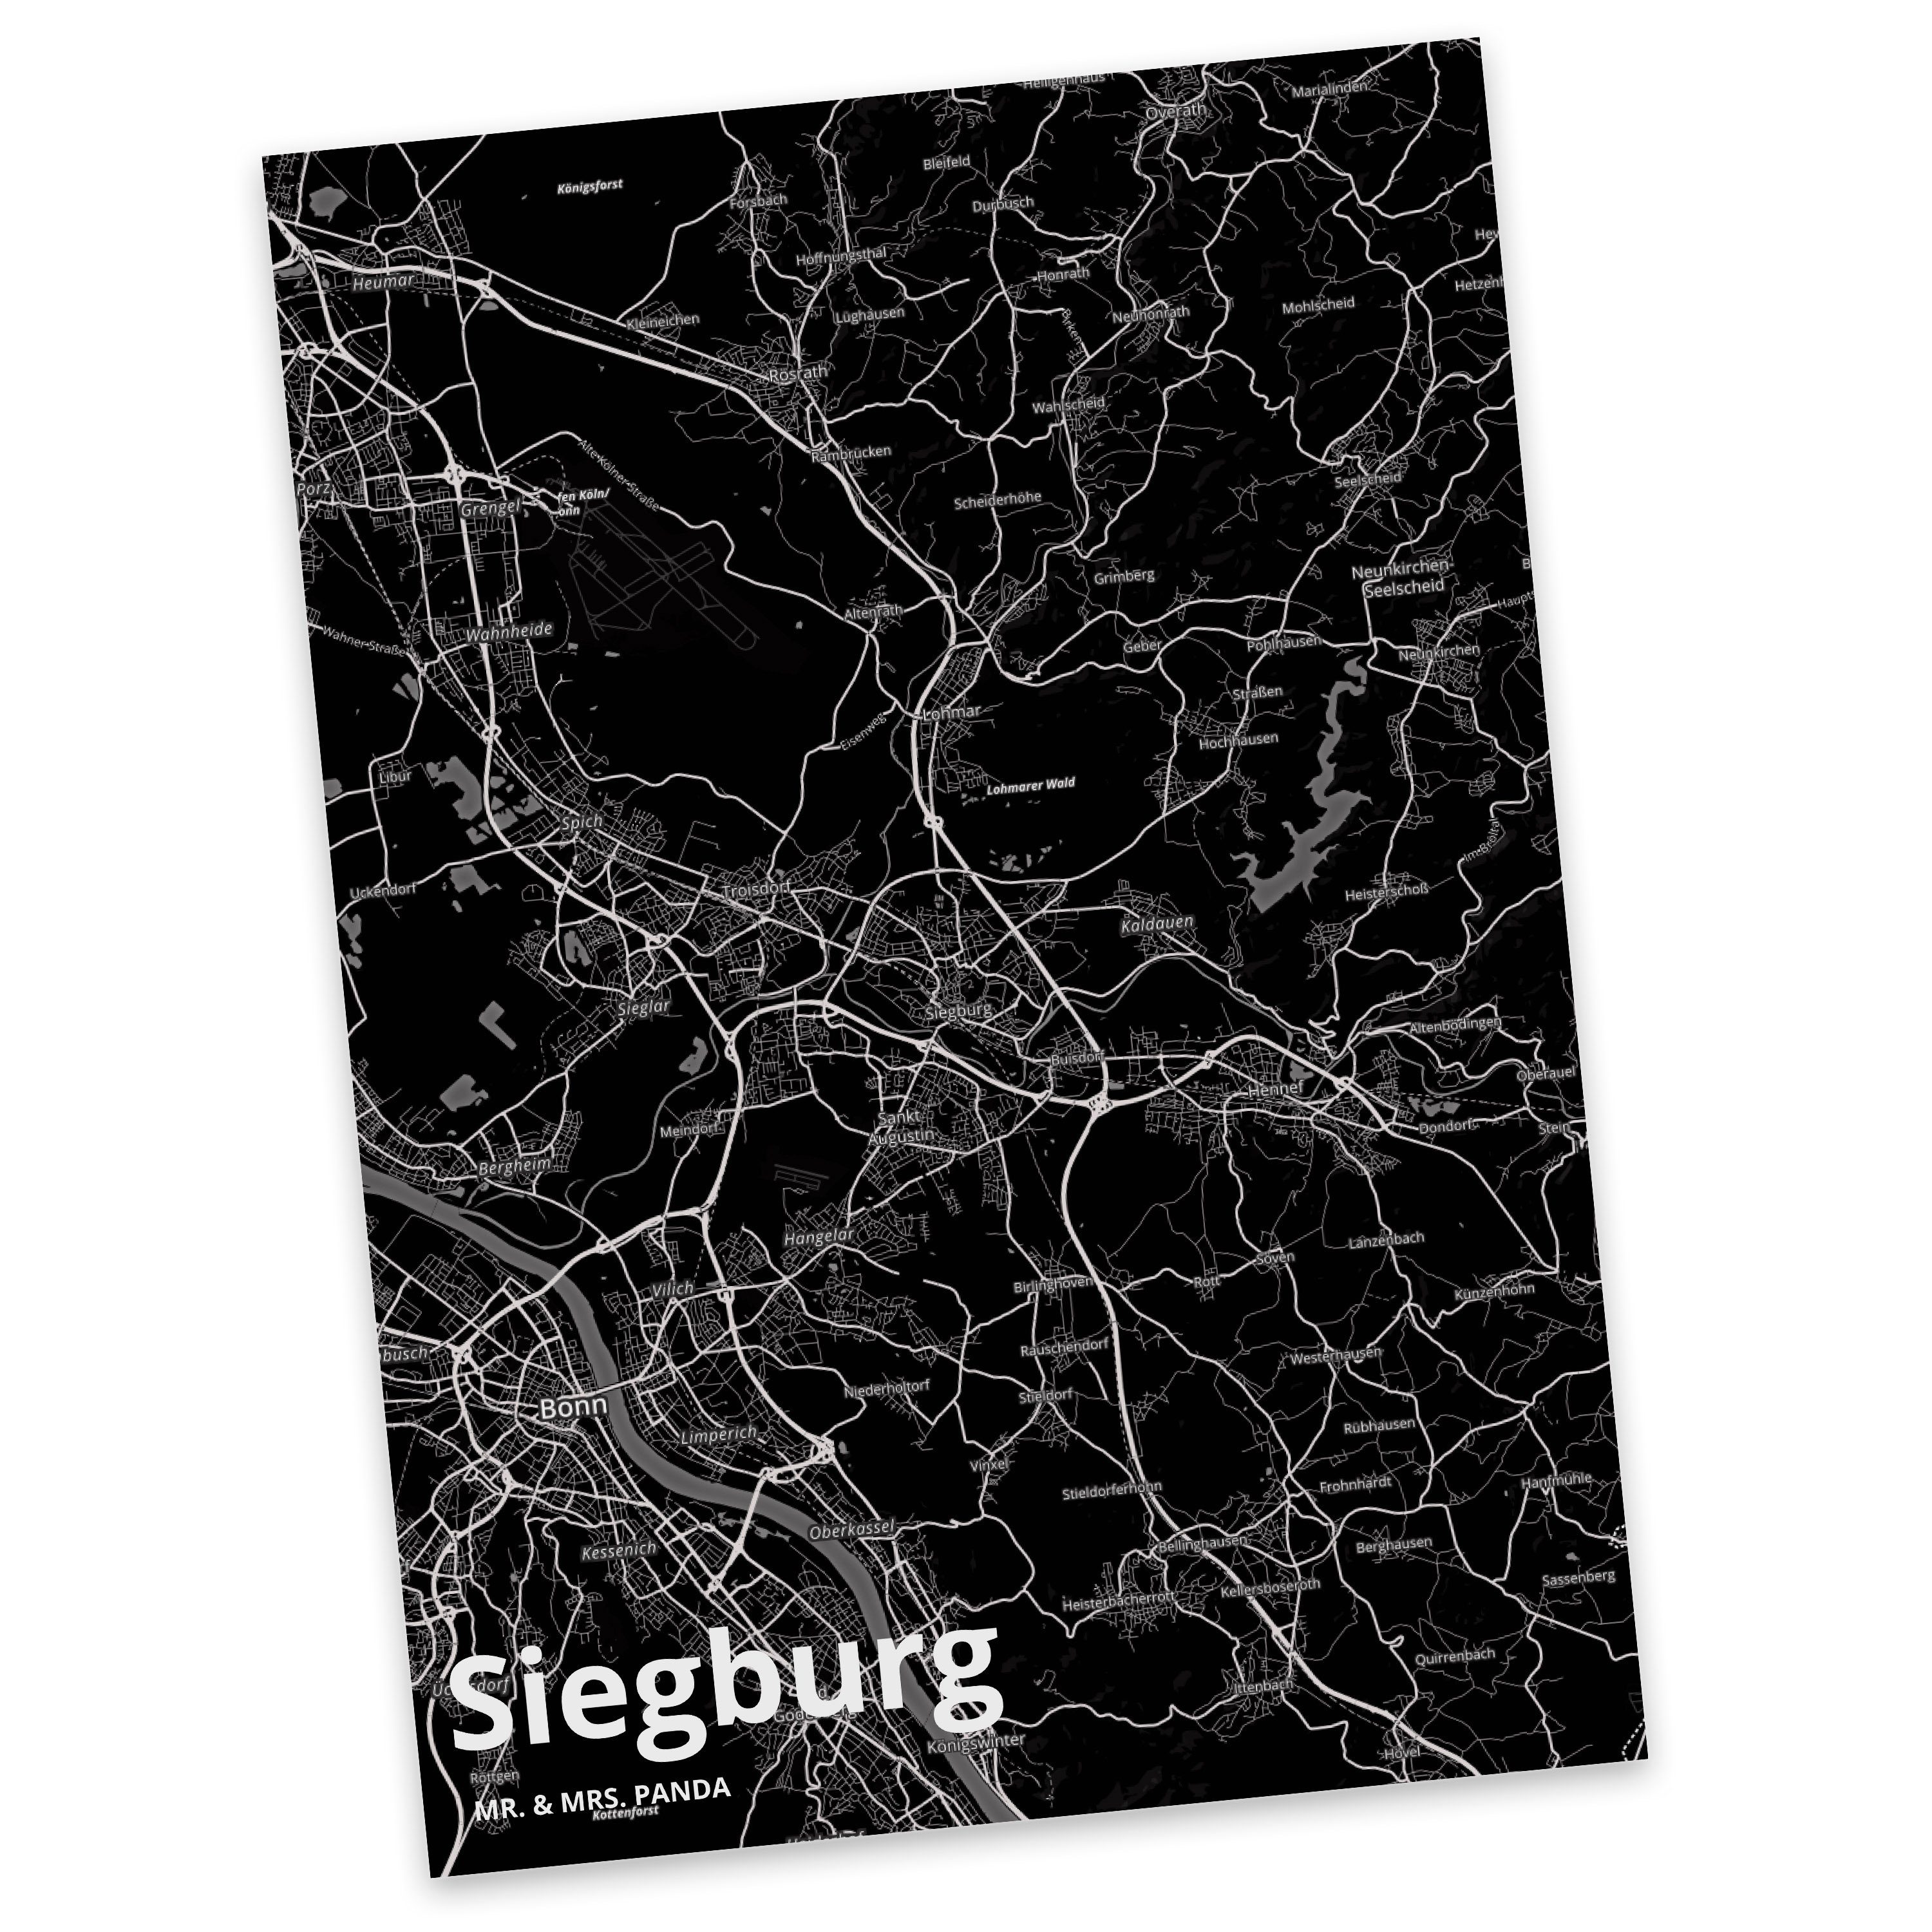 Mr. & Mrs. Panda Postkarte Siegburg - Geschenk, Stadt Dorf Karte Landkarte Map Stadtplan, Dankes